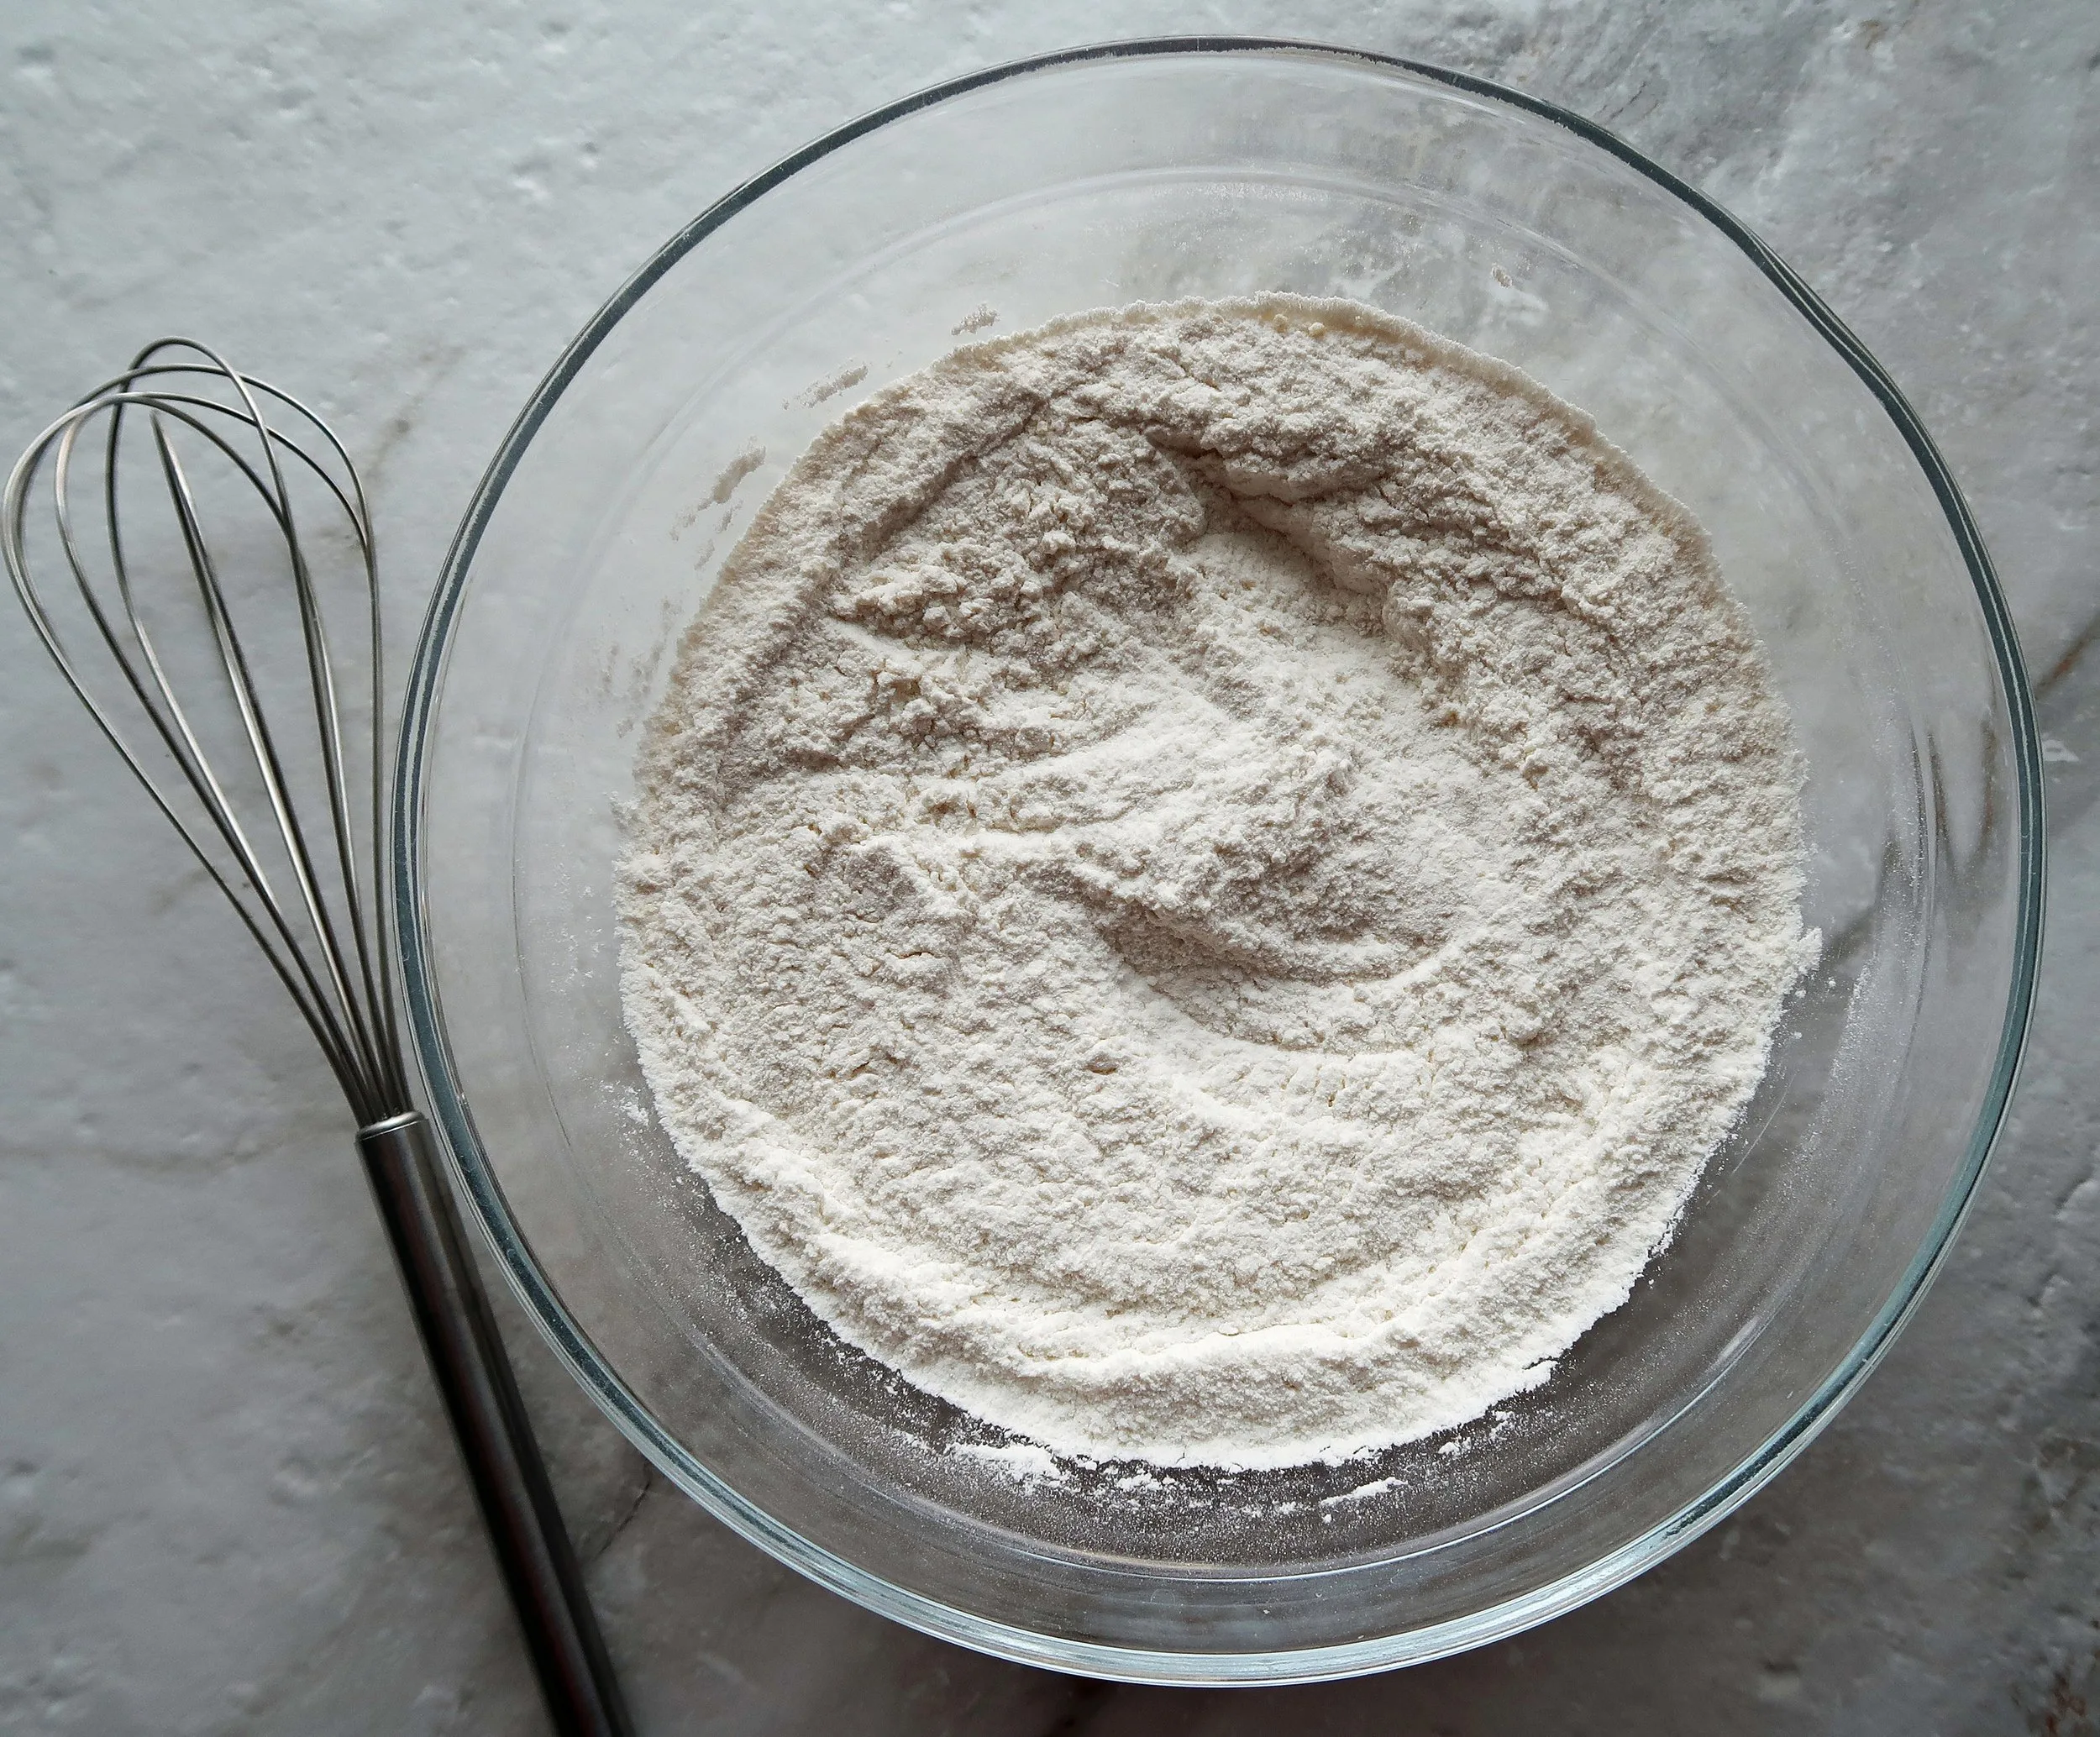 Flour, parmesan, baking powder, sugar, and salt in a bowl.